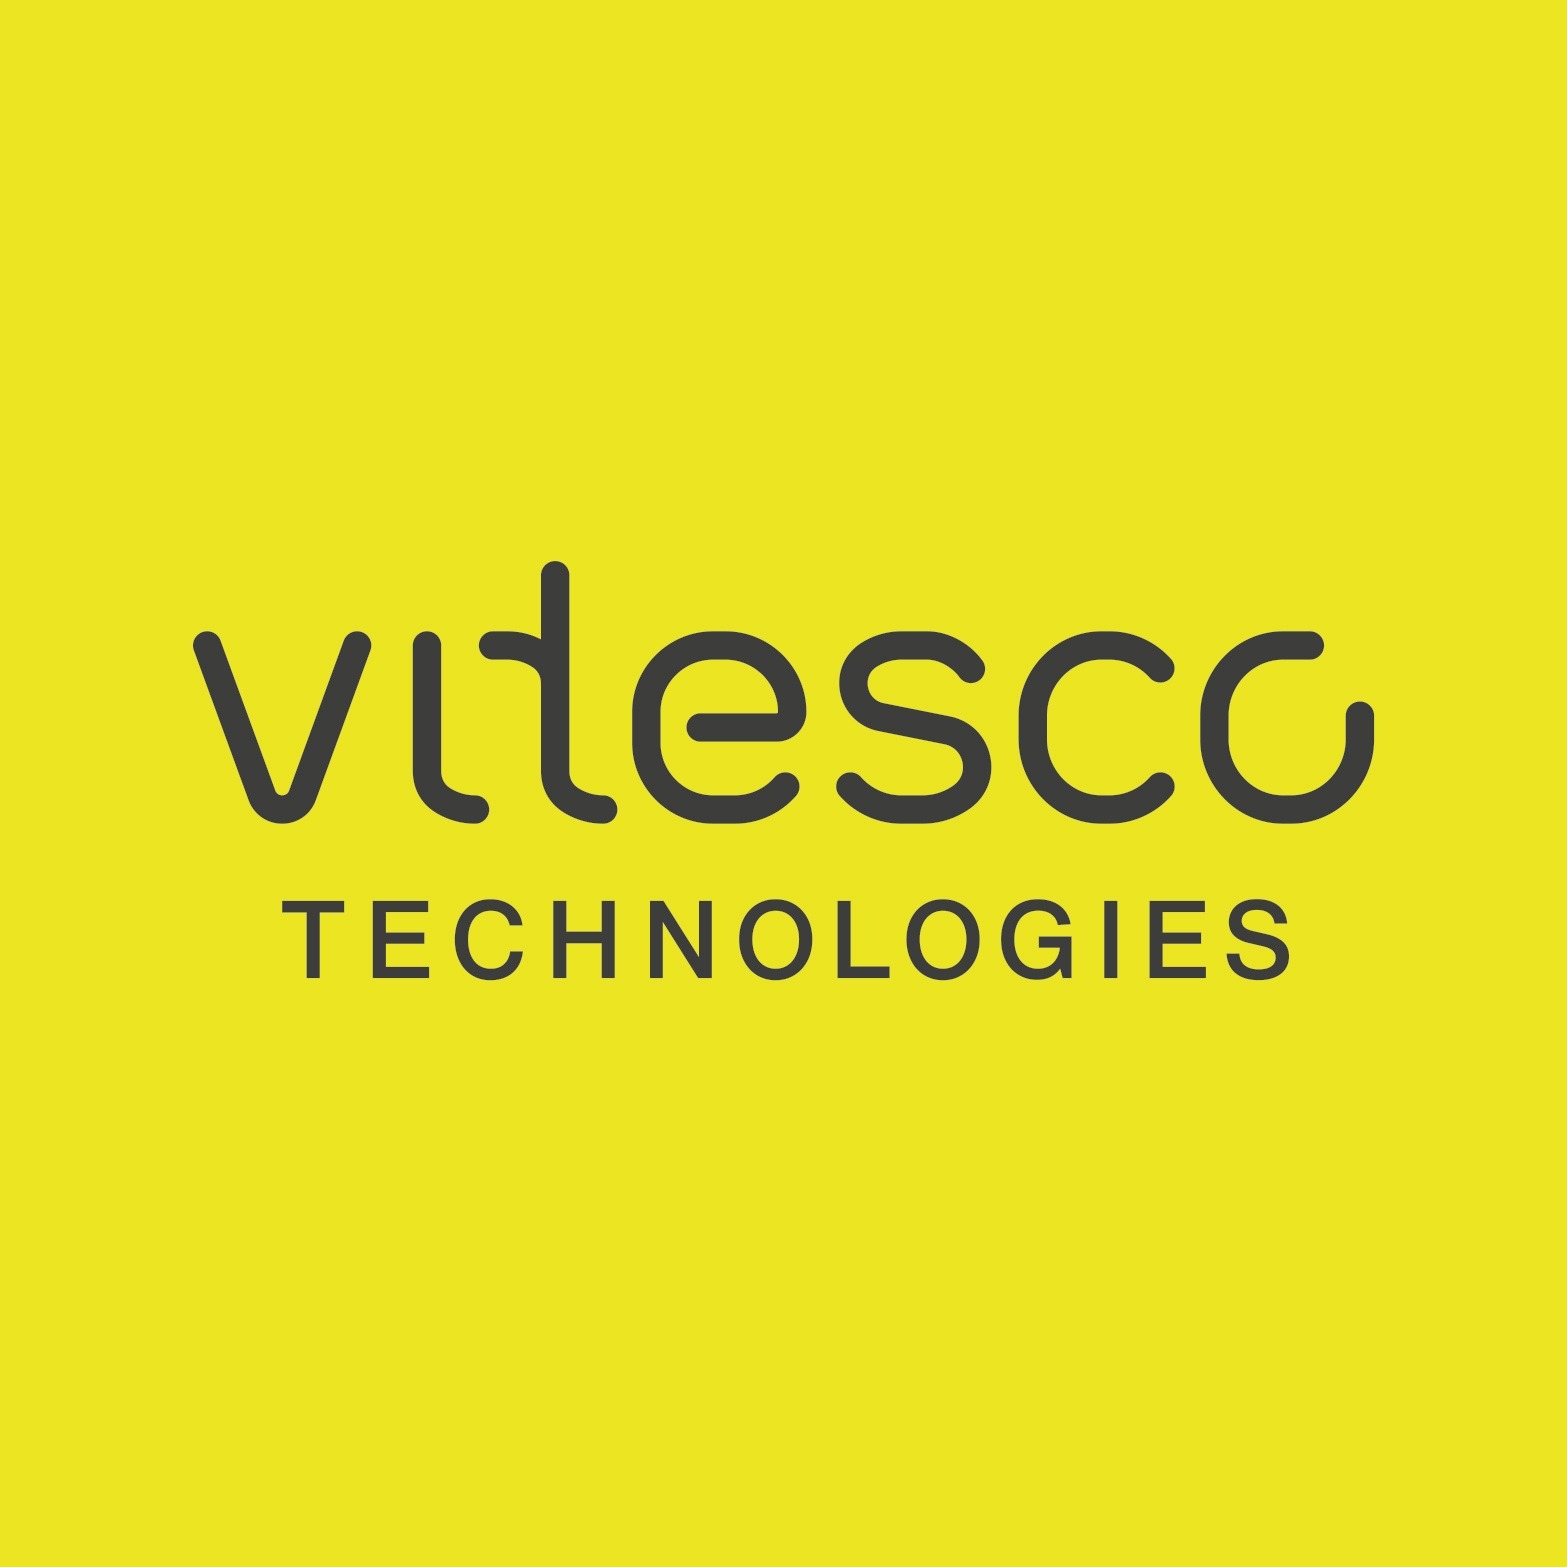 Vitesco Technologies in Dortmund - Logo